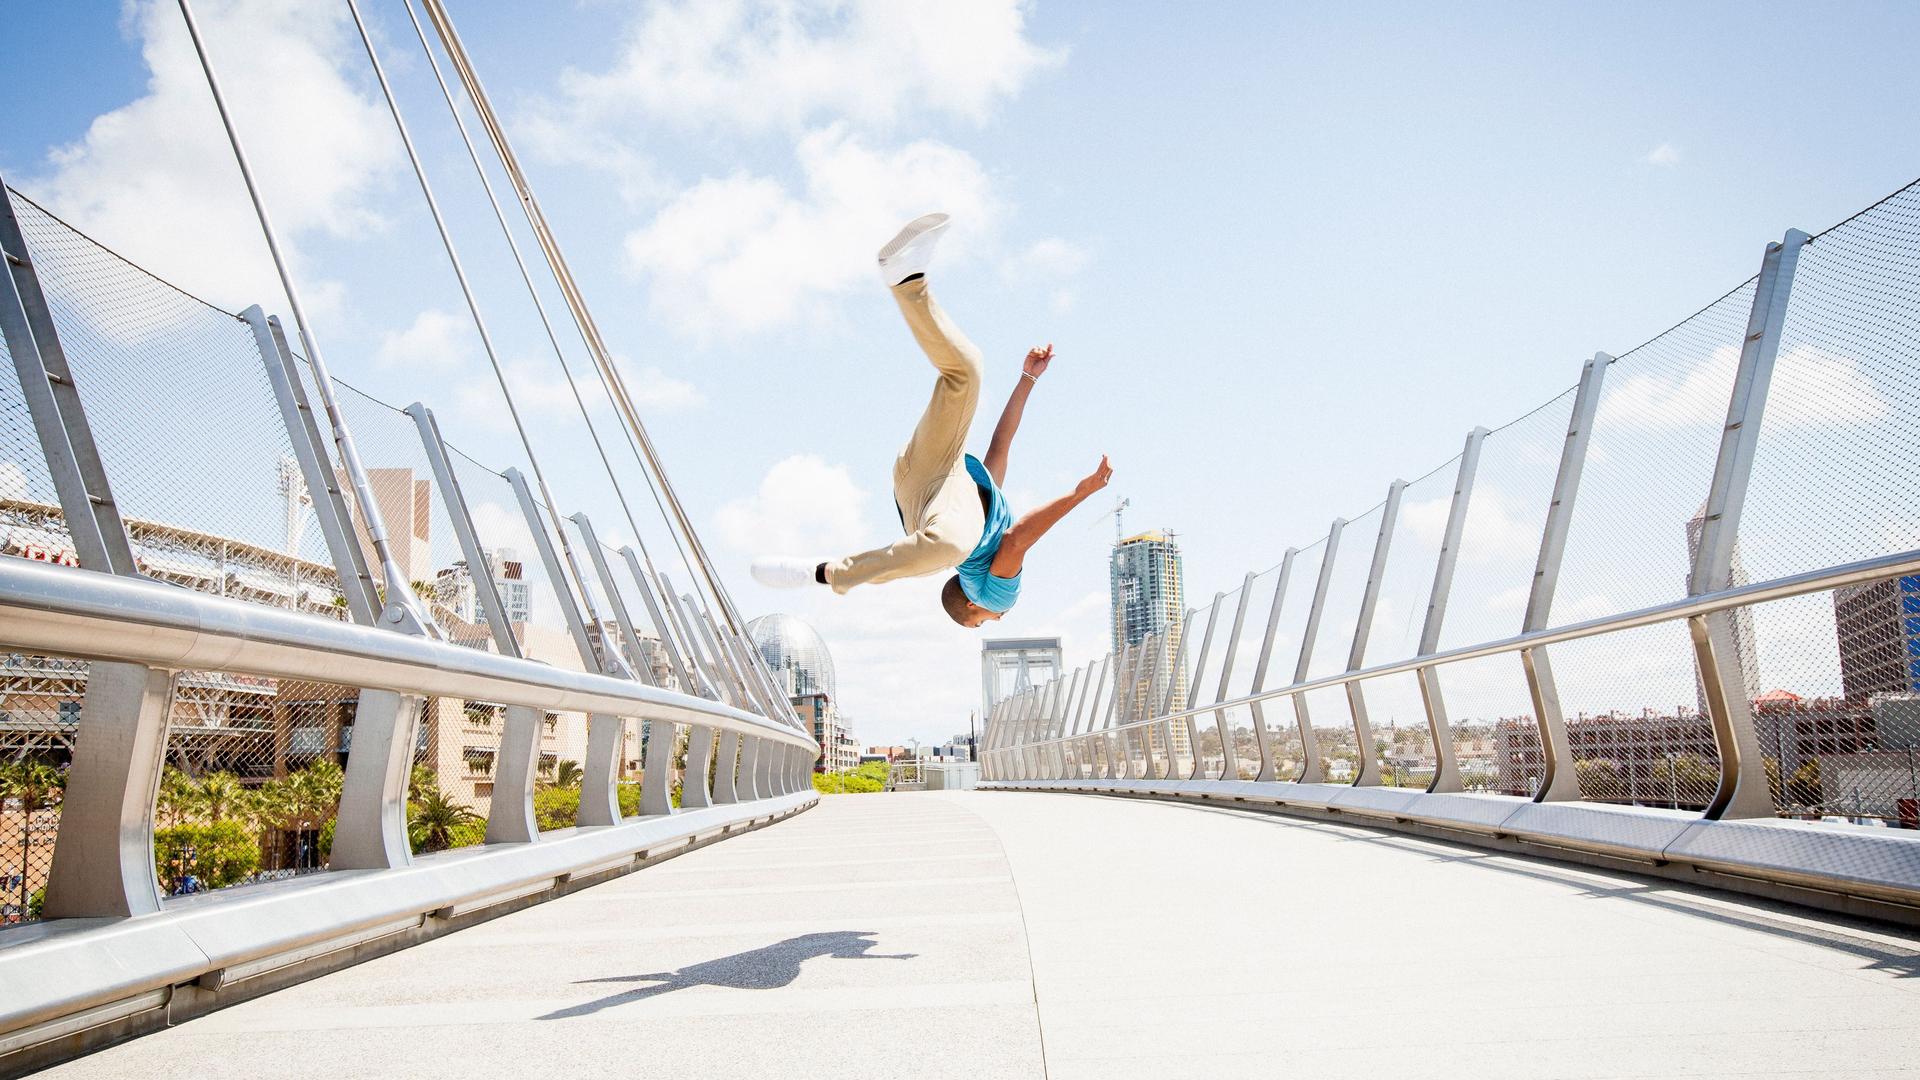 Junger Mann, der auf einer Fußgängerbrücke einen Salto schlägt. Er schwebt vor einem blauen Himmel in der Luft.